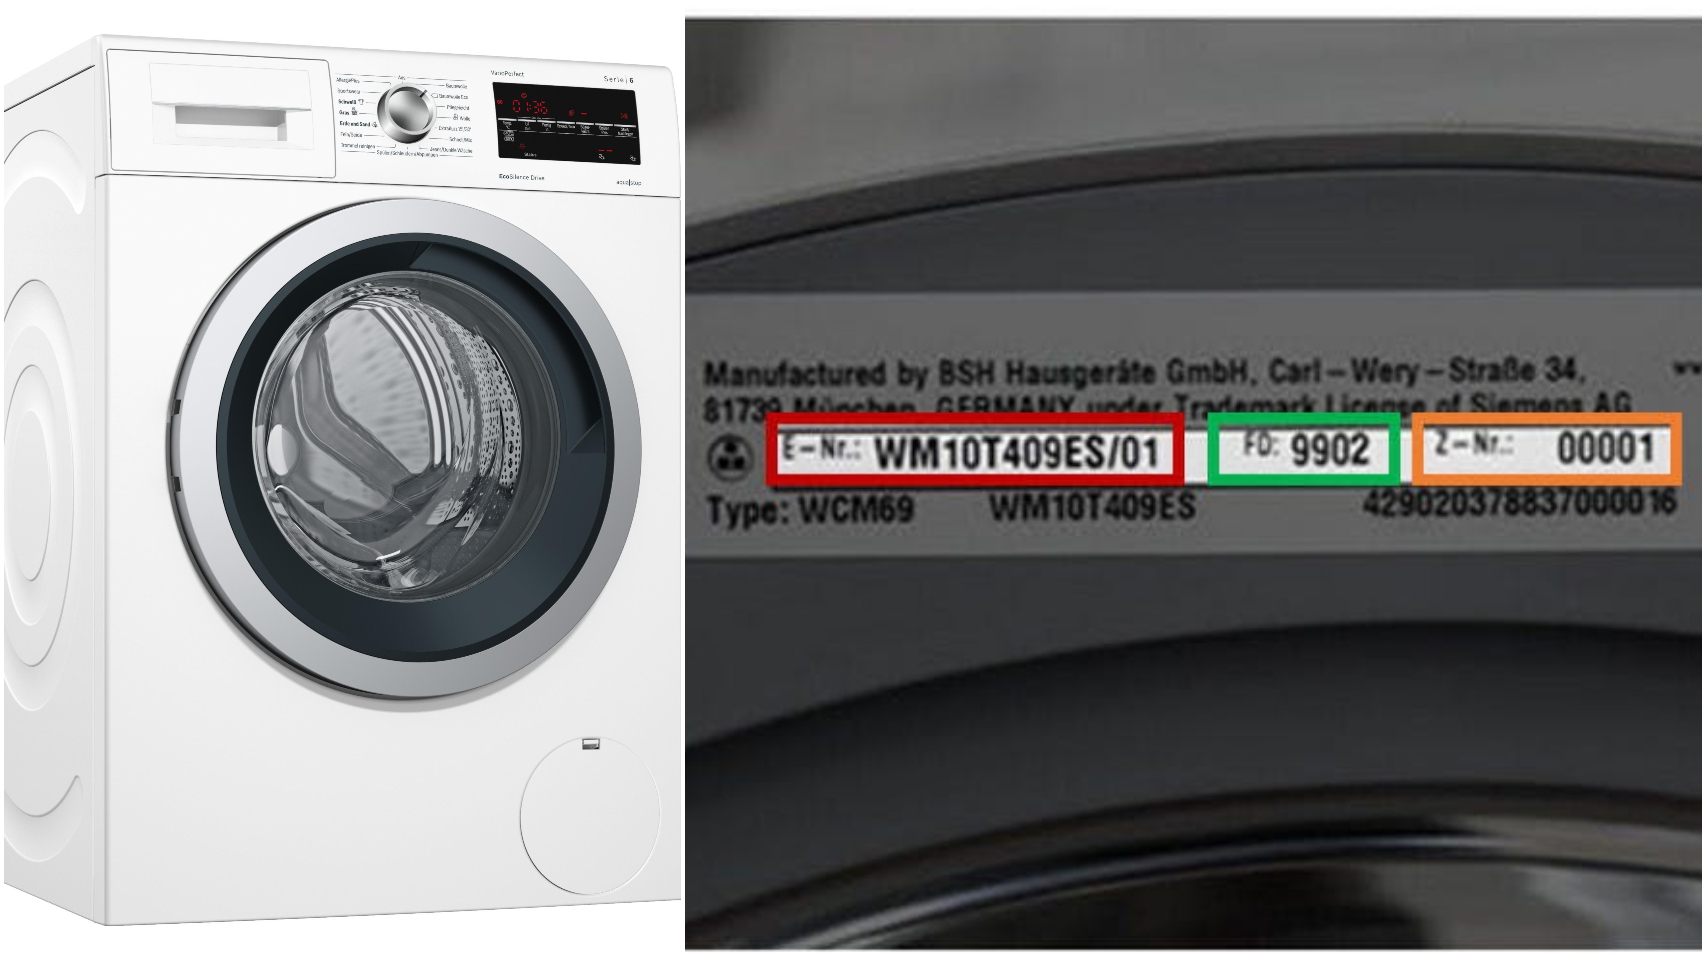 El modelo de lavadora defectuoso, junto a su número de lote.